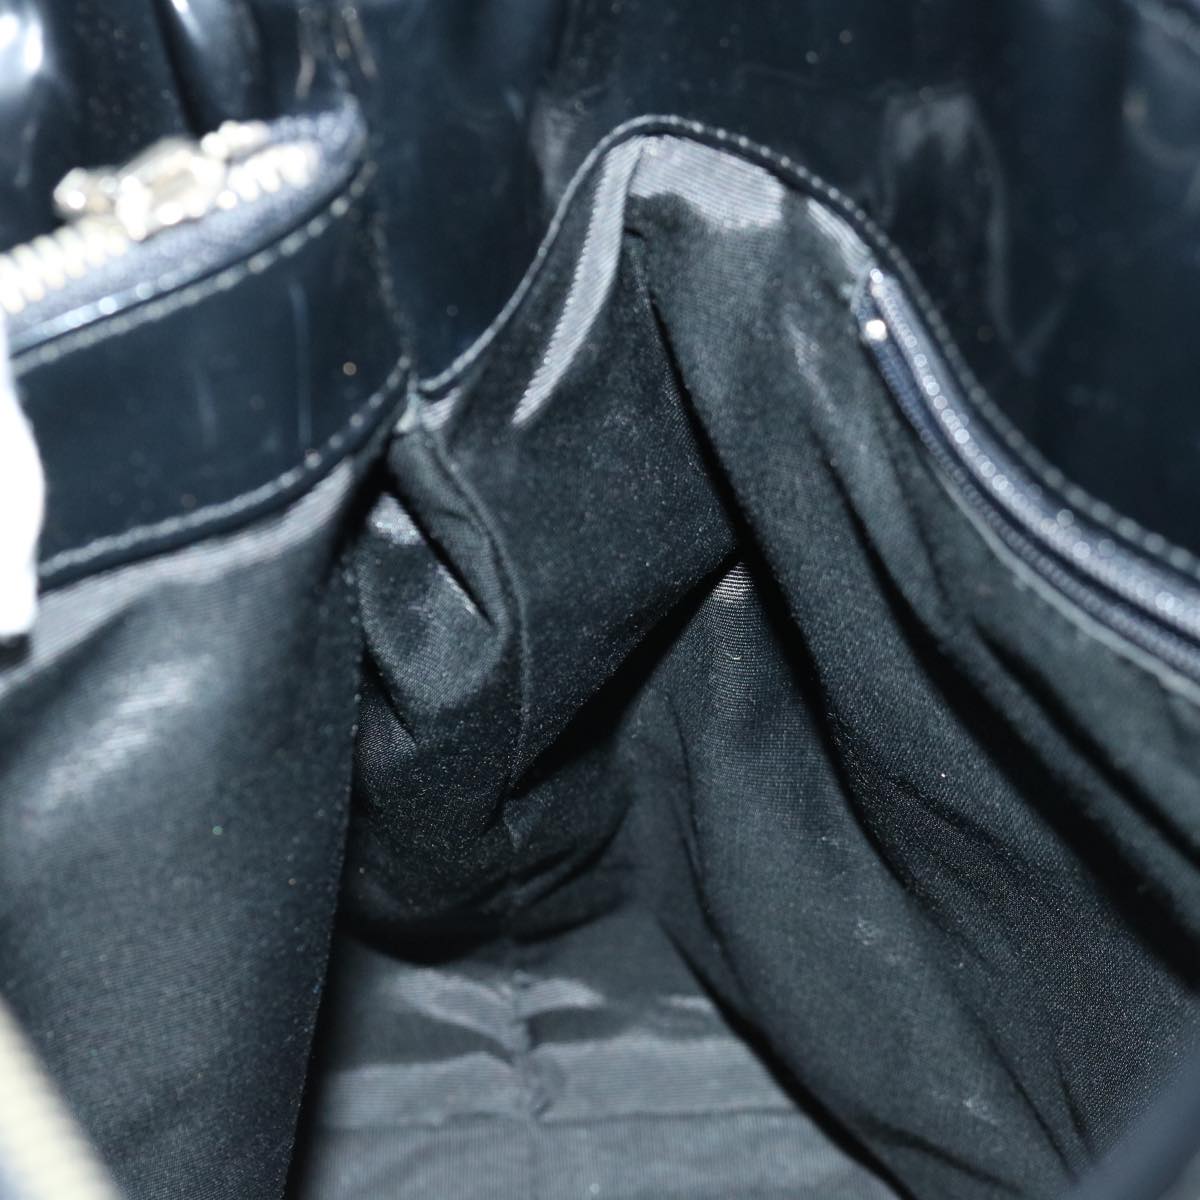 Burberrys Nova Check Blue Label Tote Bag Canvas Beige Black Auth 71014